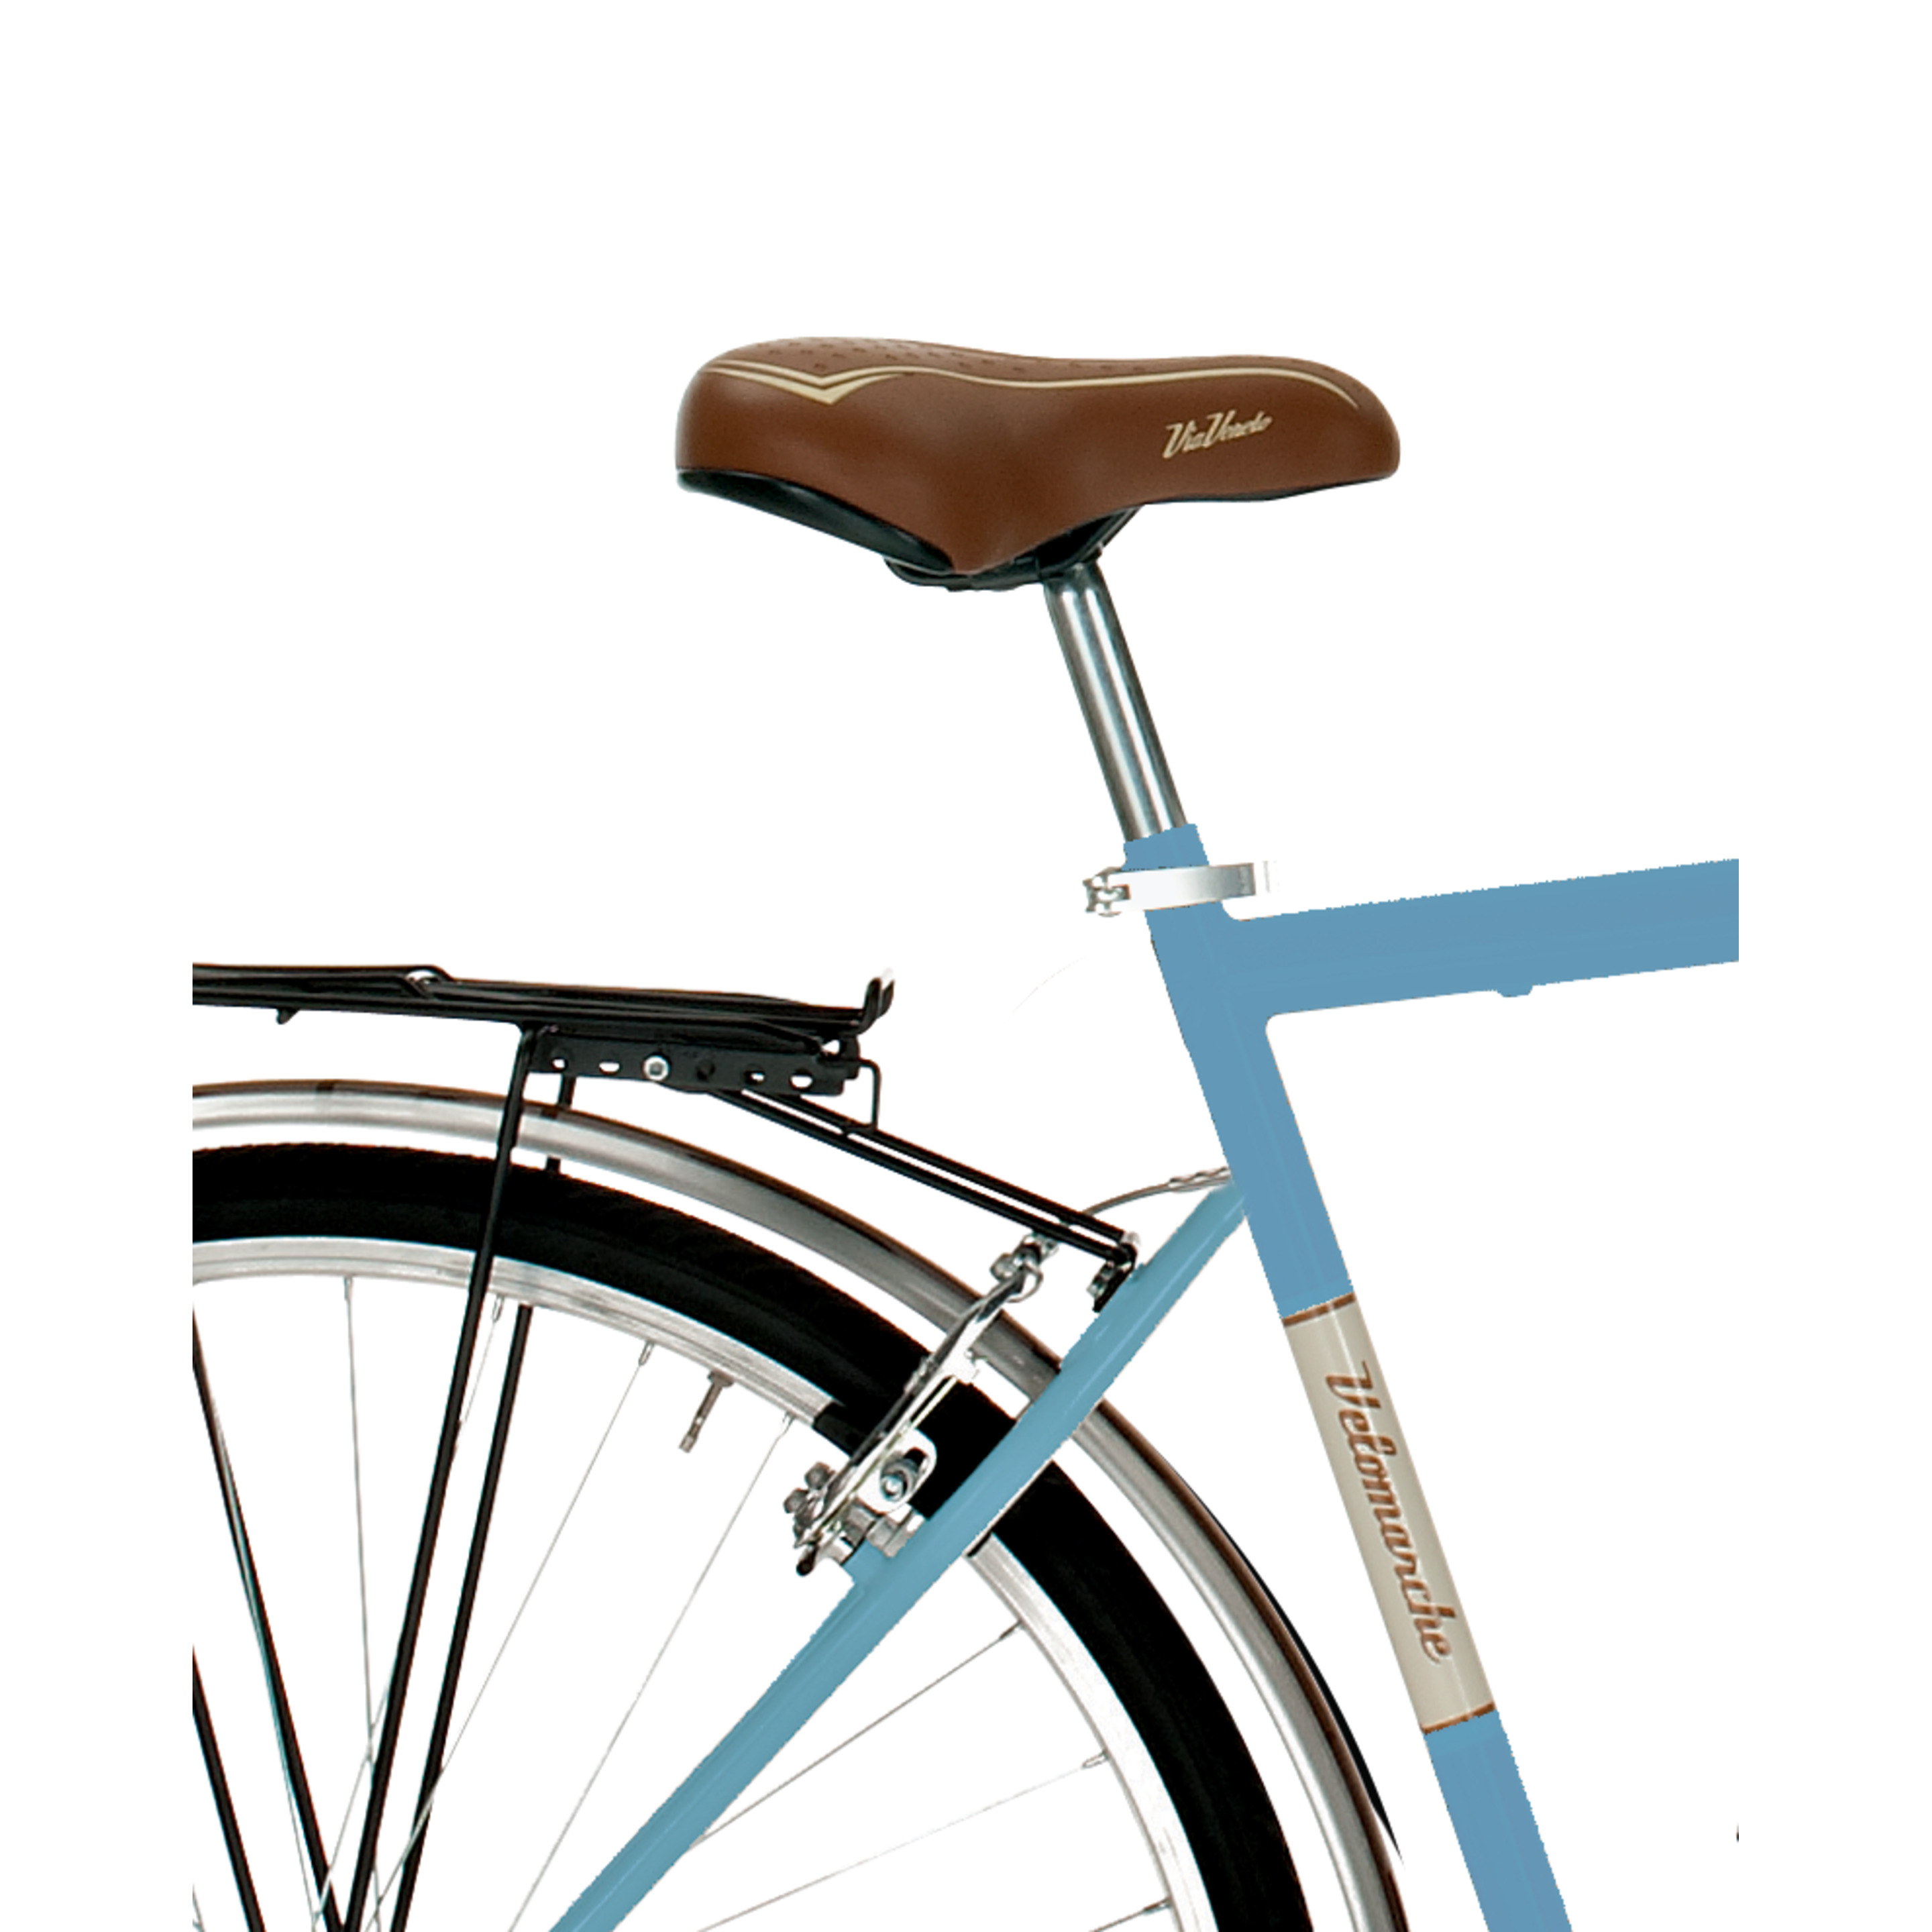 Bicicleta Via Veneto 605man, Cuadro De Acero De 50cm, Ruedas De 700x35c, 6 Velocidades Azul